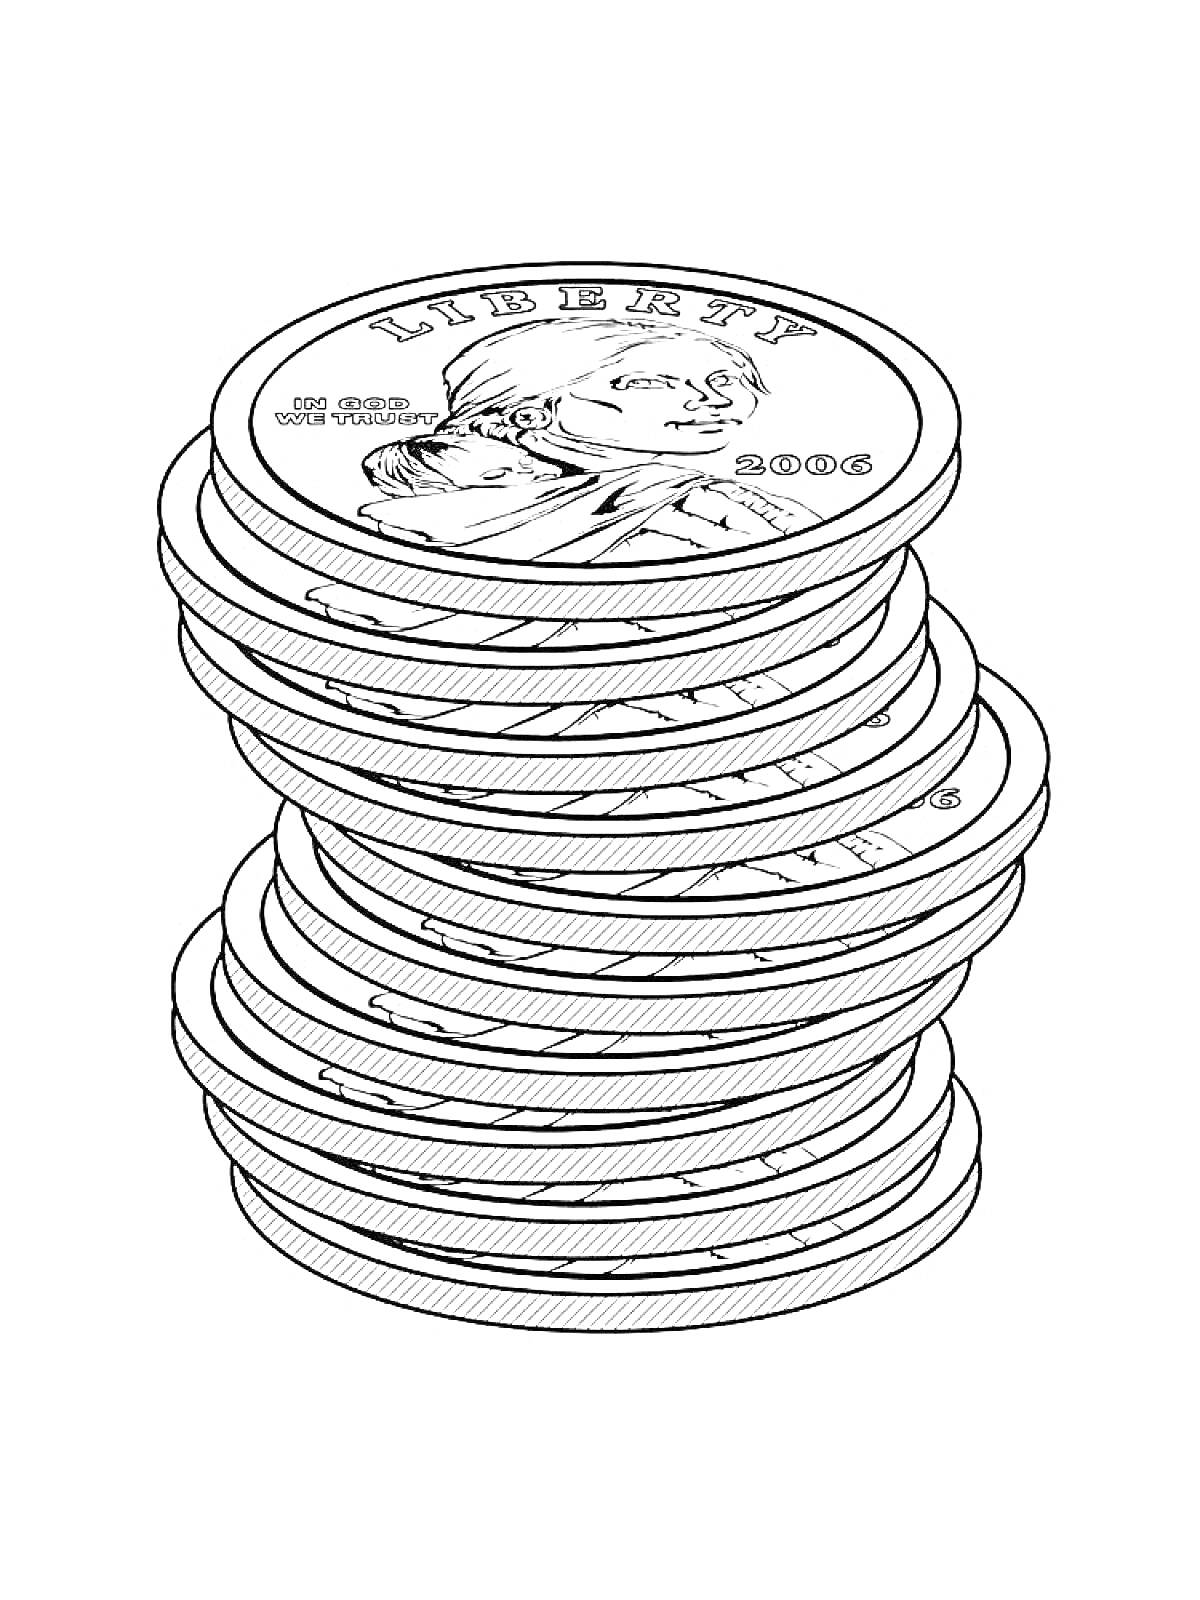 Раскраска Стопка монет с изображением профиля и надписью 